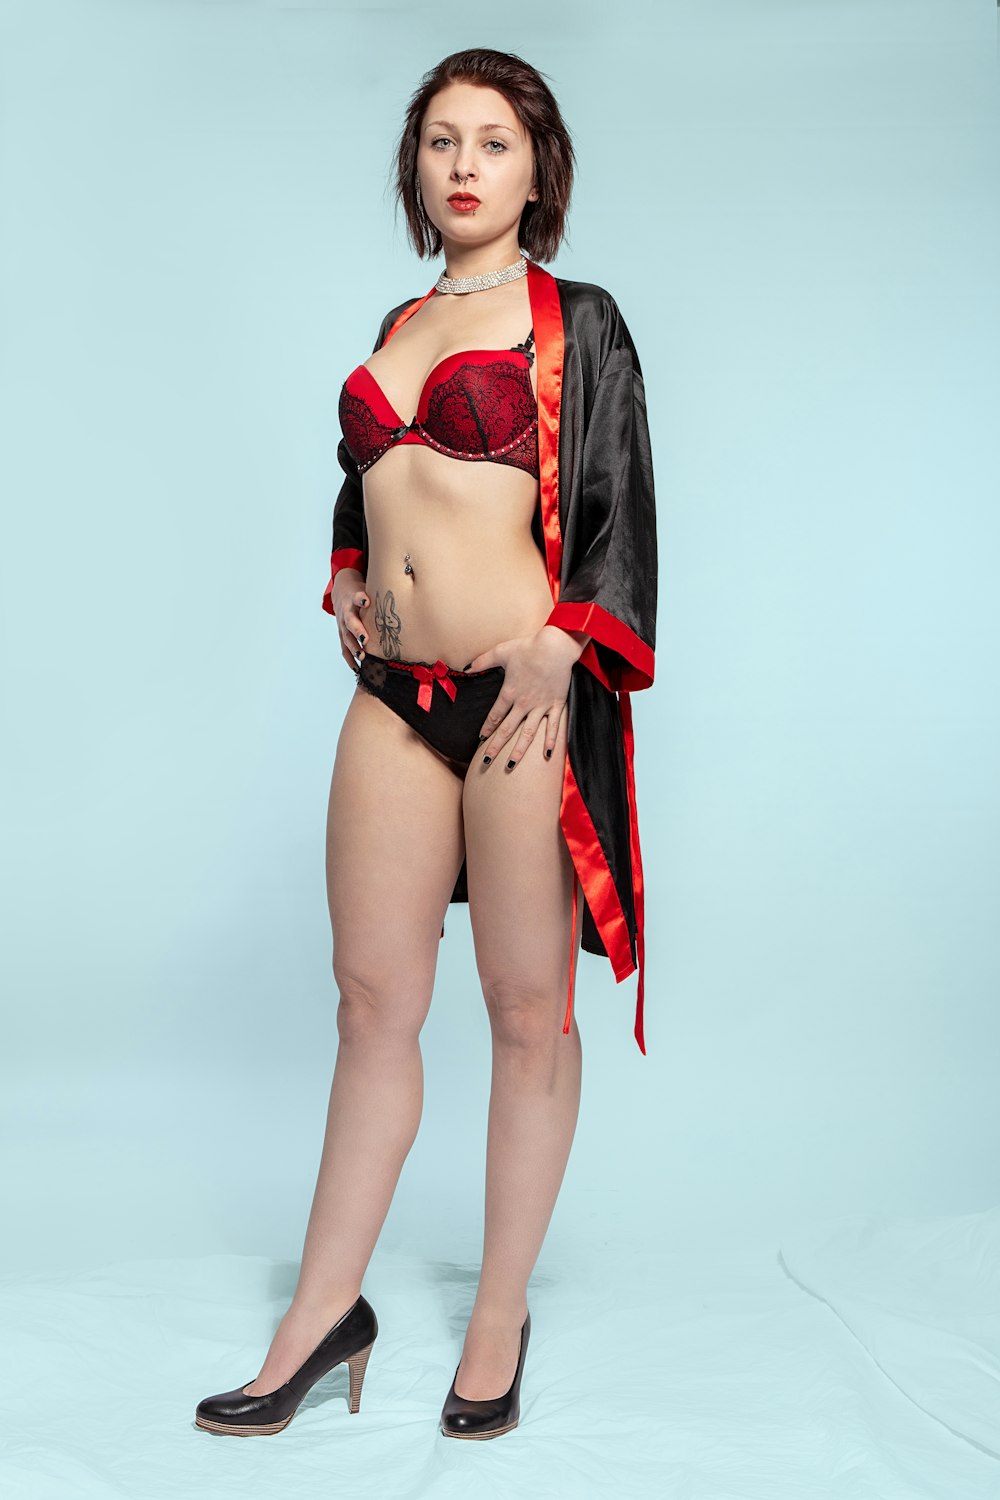 woman in red bikini standing